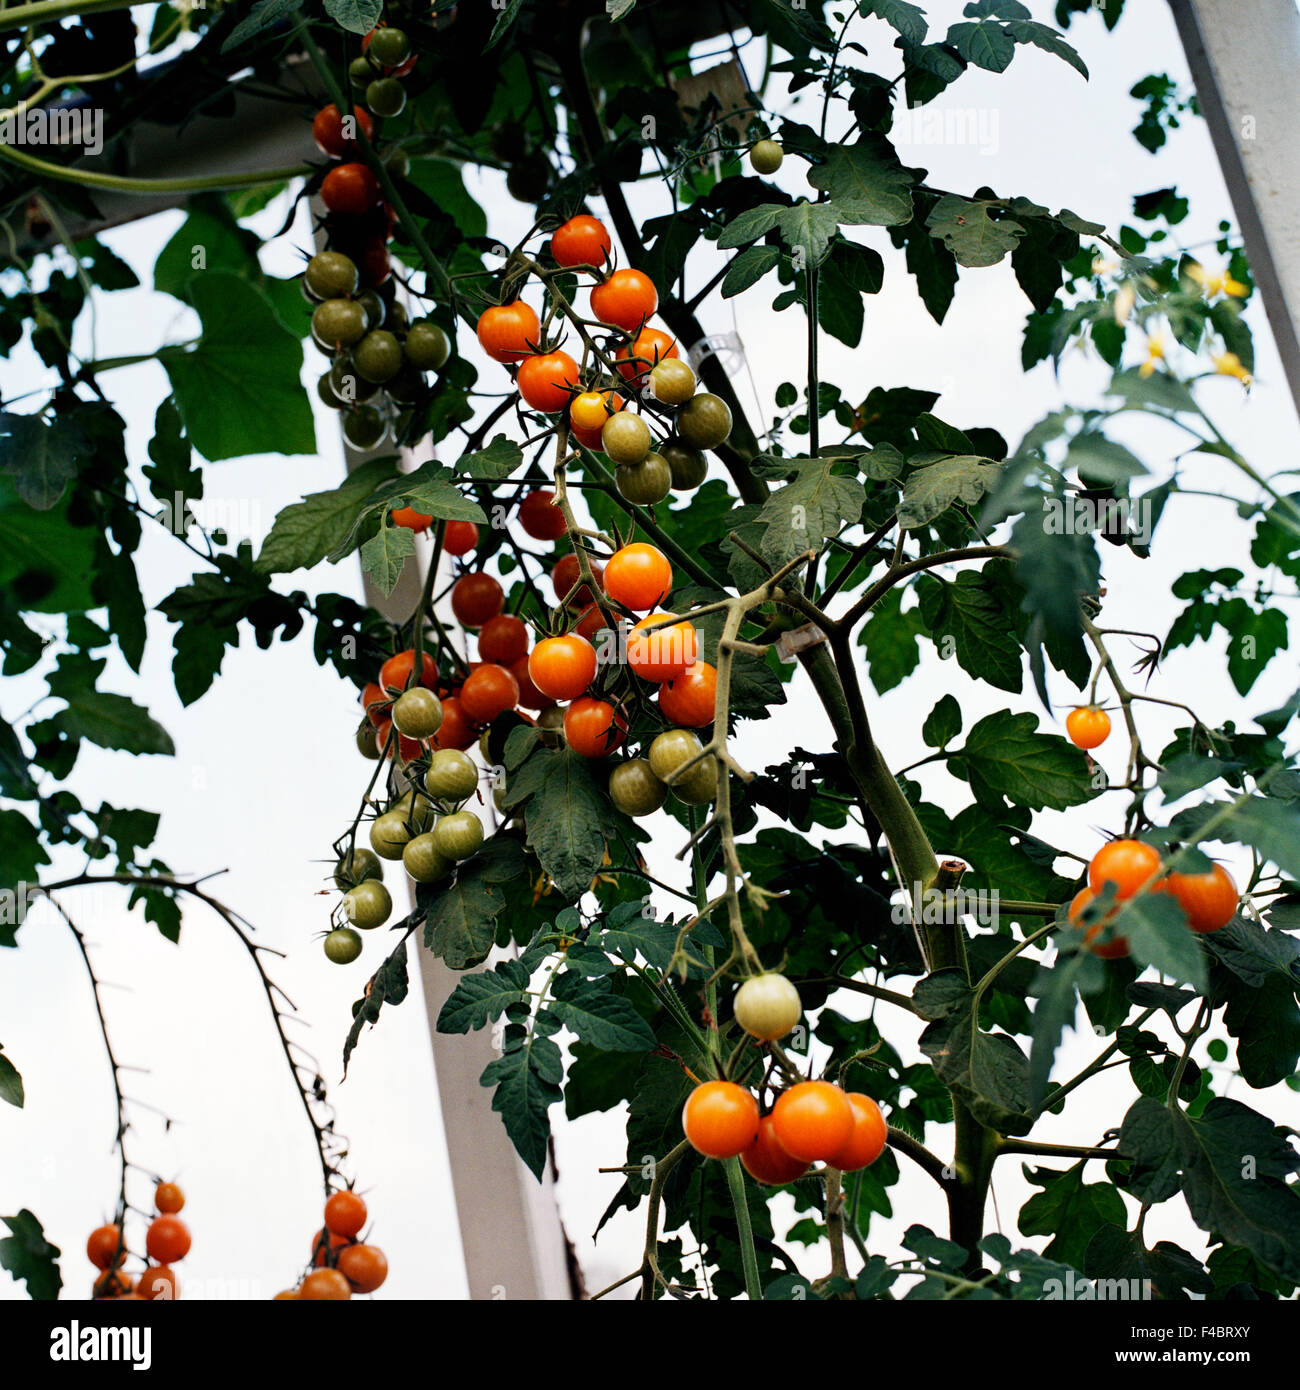 Imagen en color frutas y verduras de hoja cuadrada plantas vegetales de tomate Foto de stock